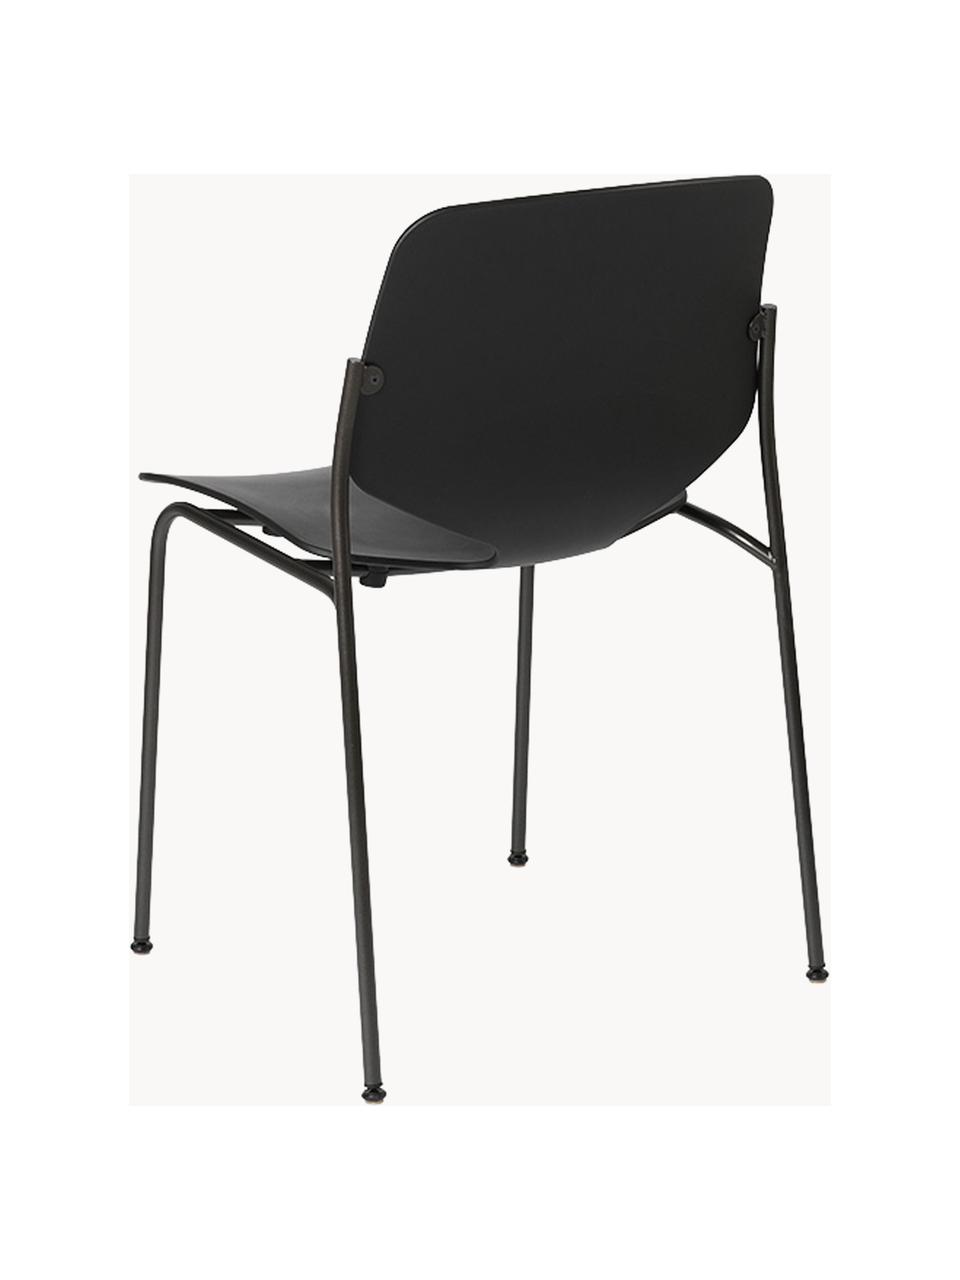 Židle z umělé hmoty Nova Sea, ručně vyrobená, Černá, Š 55 cm, H 56 cm